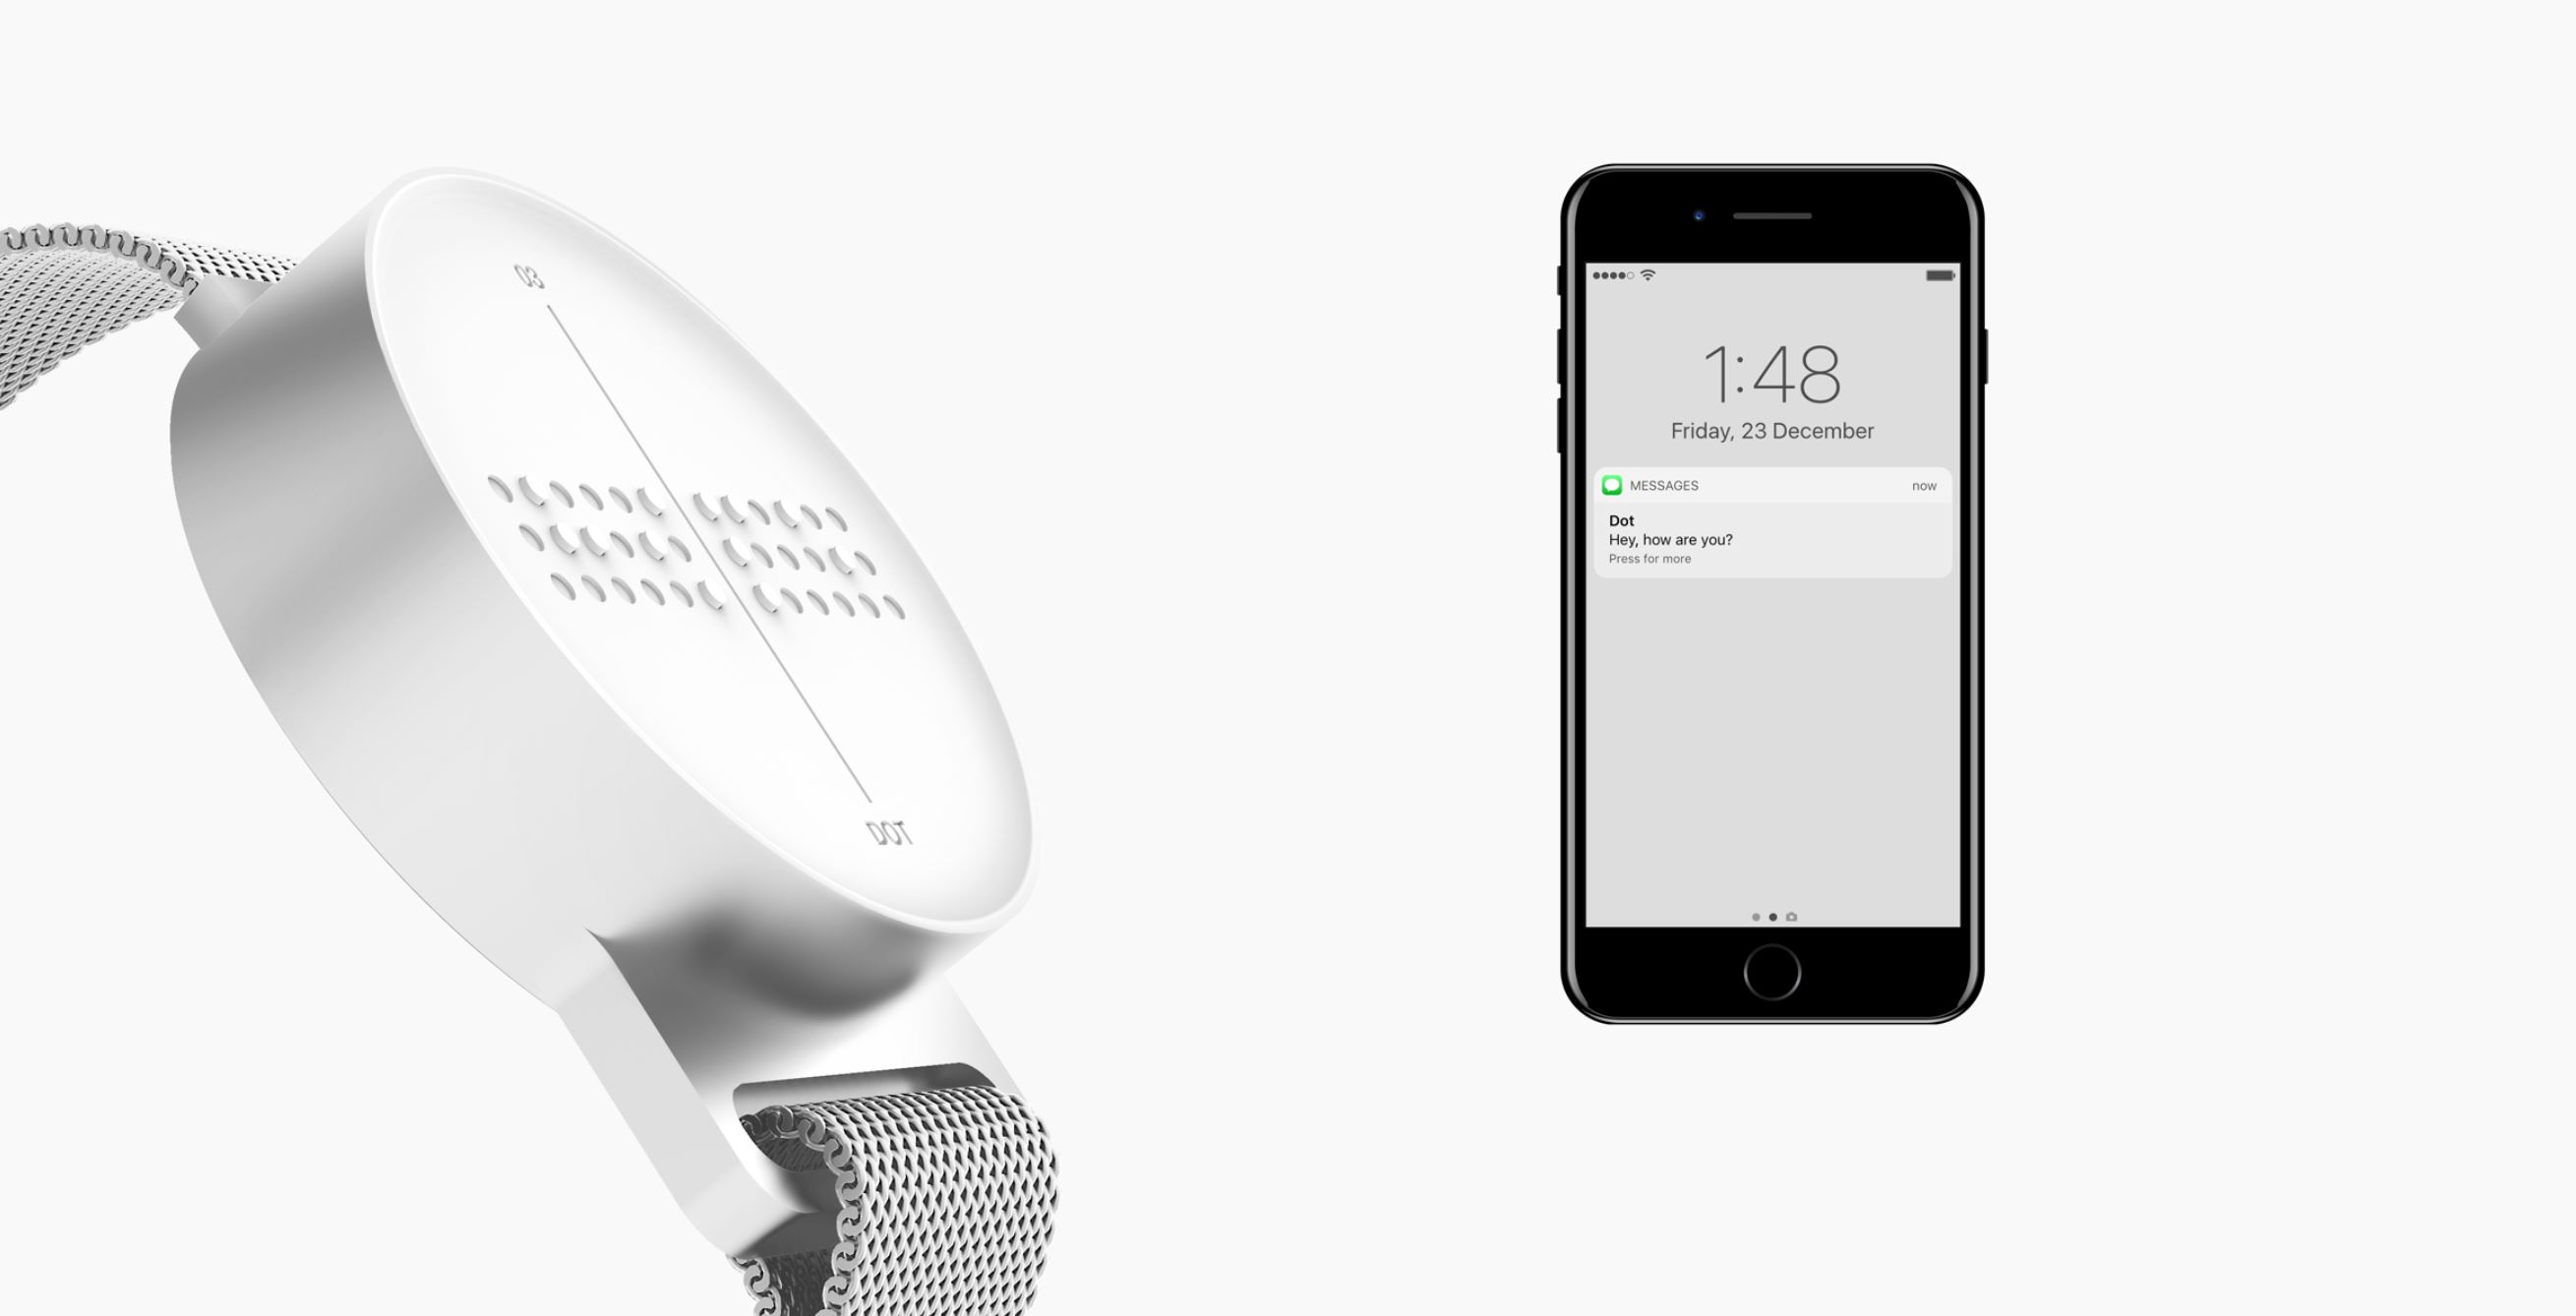 Bild 2: Eine Smartwatch mit erhobener 3-D Brailleschrift ist zu sehen. Daneben eine Smartphone.